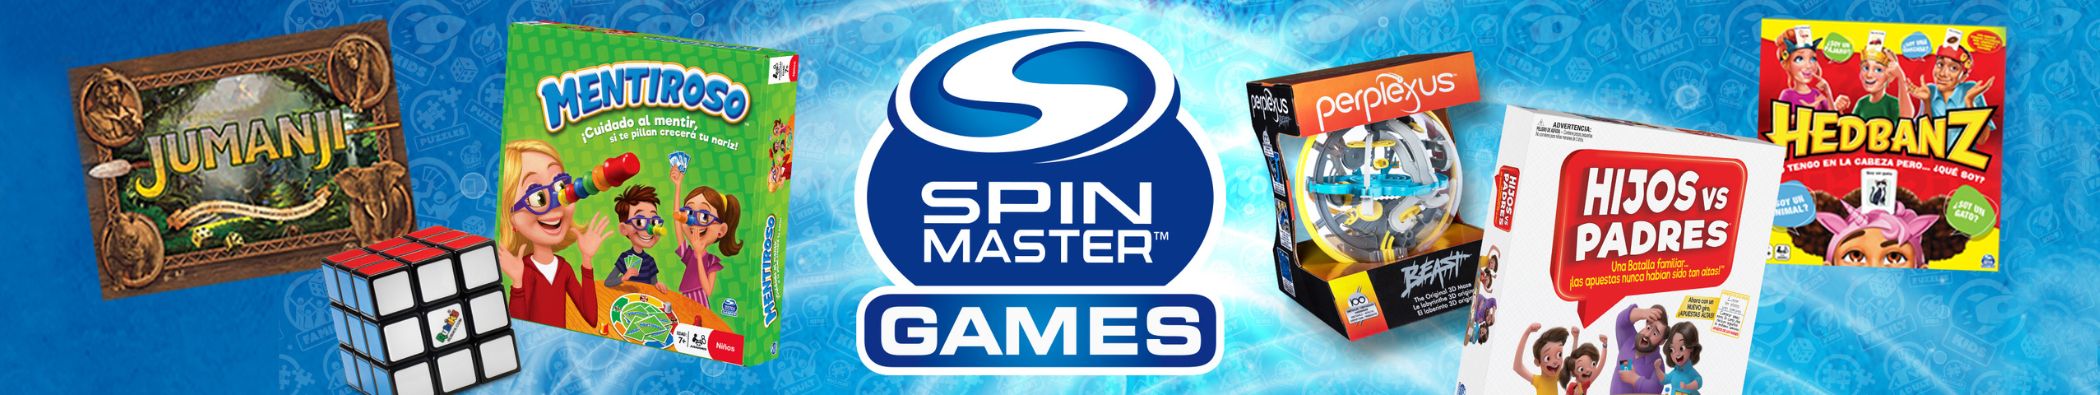 Jogos de tabuleiro Spin Master